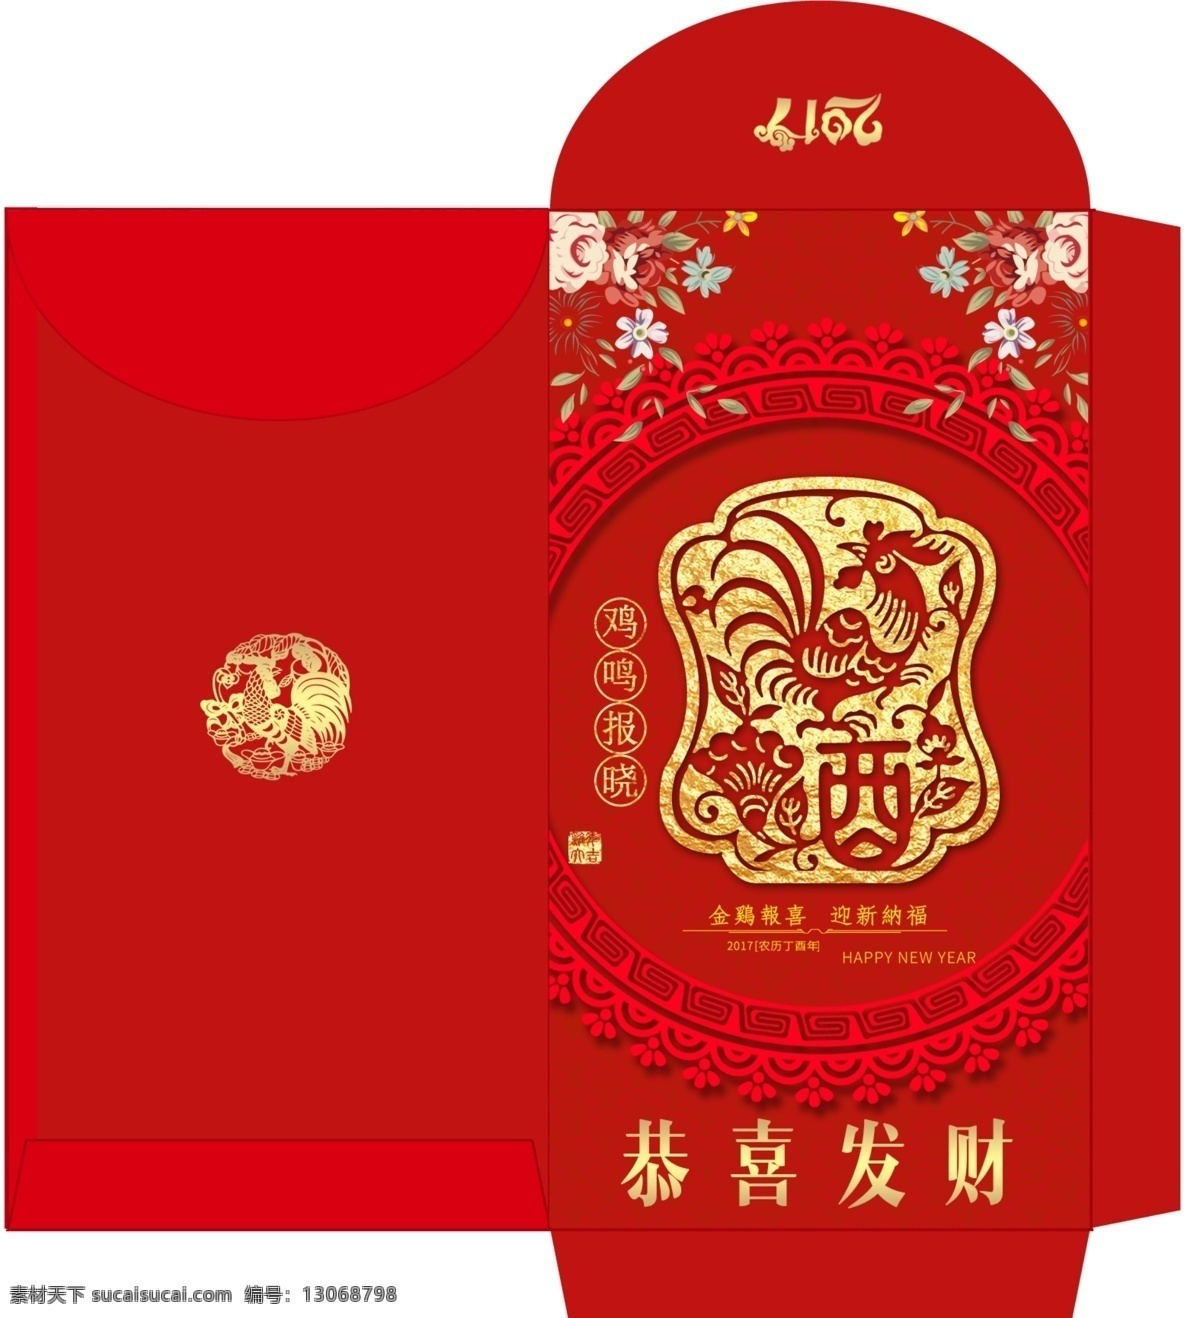 原创鸡年红包 利是封 新年红包设计 原创 婚礼 红包 红色中国风 结婚 送礼 包装设计 新年红包 节日 设计图 双囍红包设计